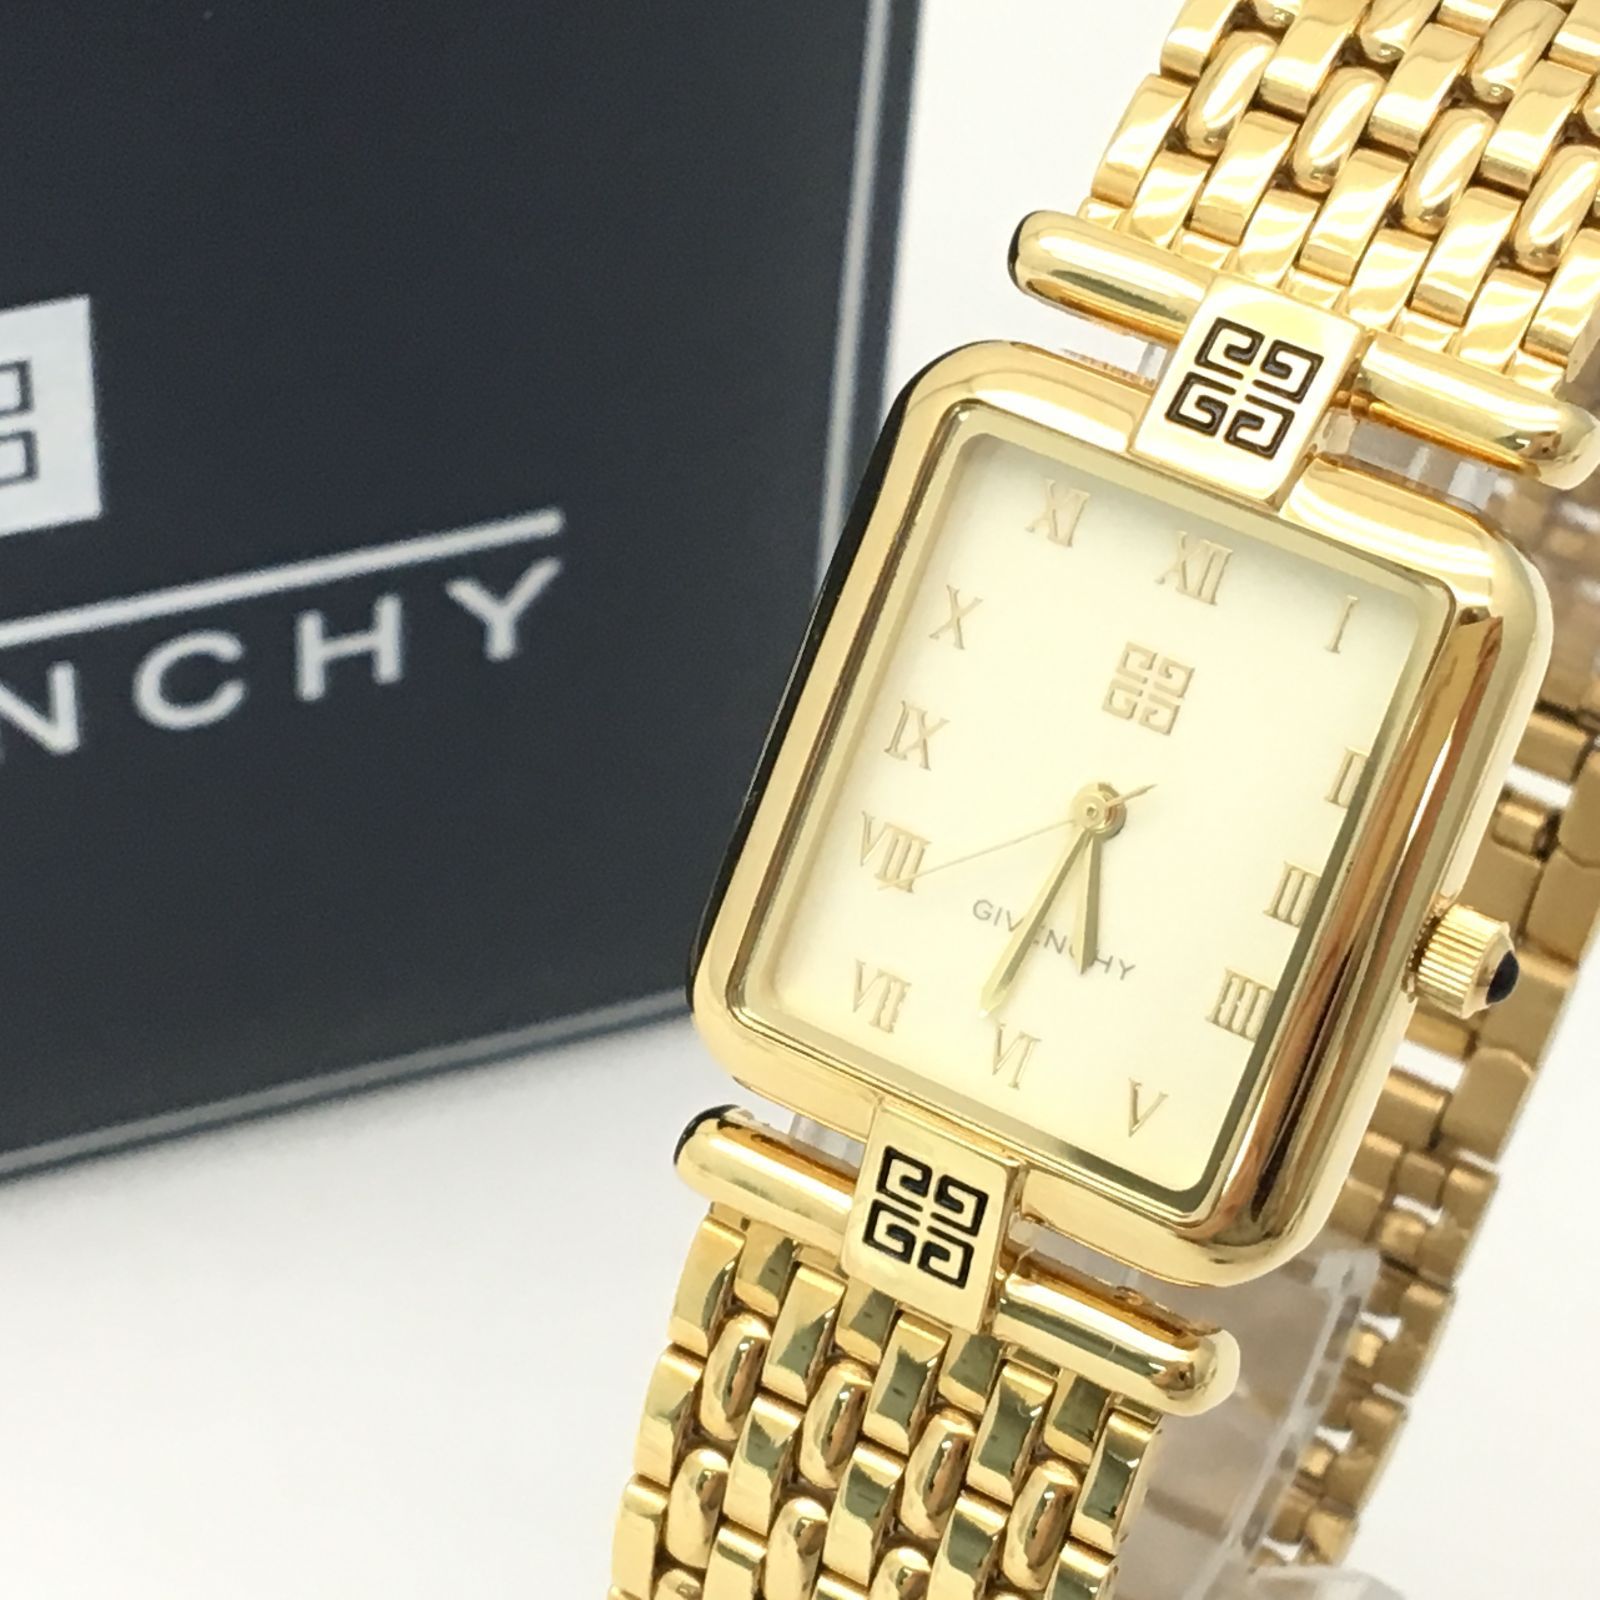 GIVENCHY PARIS 腕時計 ゴールド - 腕時計(アナログ)